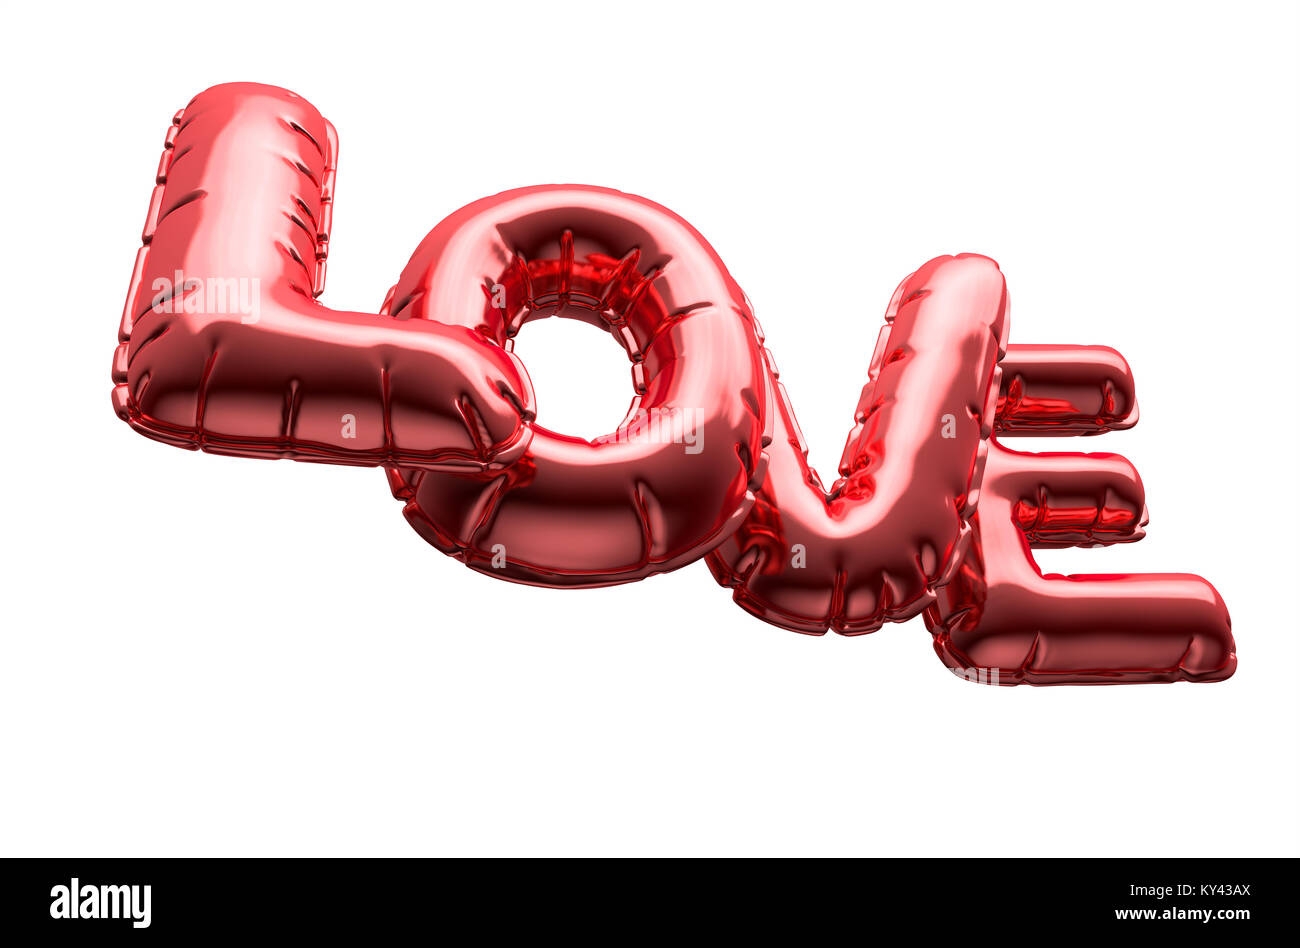 Un ensemble de quatre lettres ballon métallique le mot amour pour célébrer la Saint-Valentin sur un fond blanc - 3D render Banque D'Images